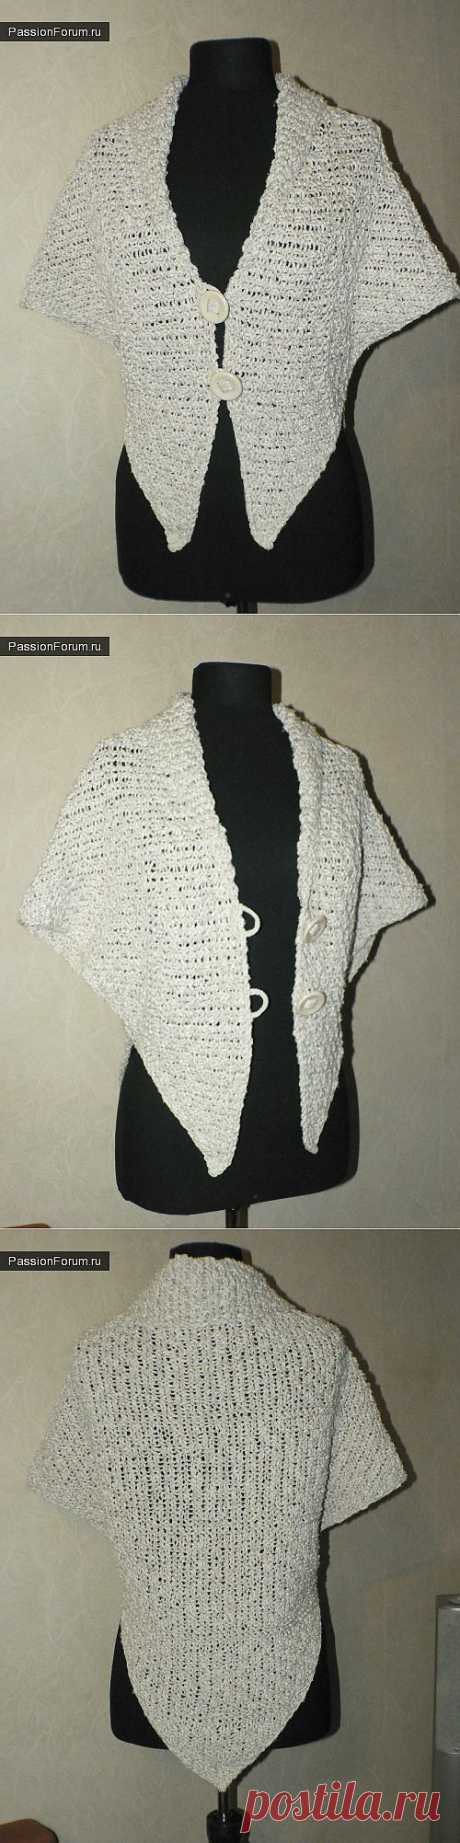 Еще один модел из шарфа / Вязание спицами. Работы пользователей / PassionForum - мастер-классы по рукоделию